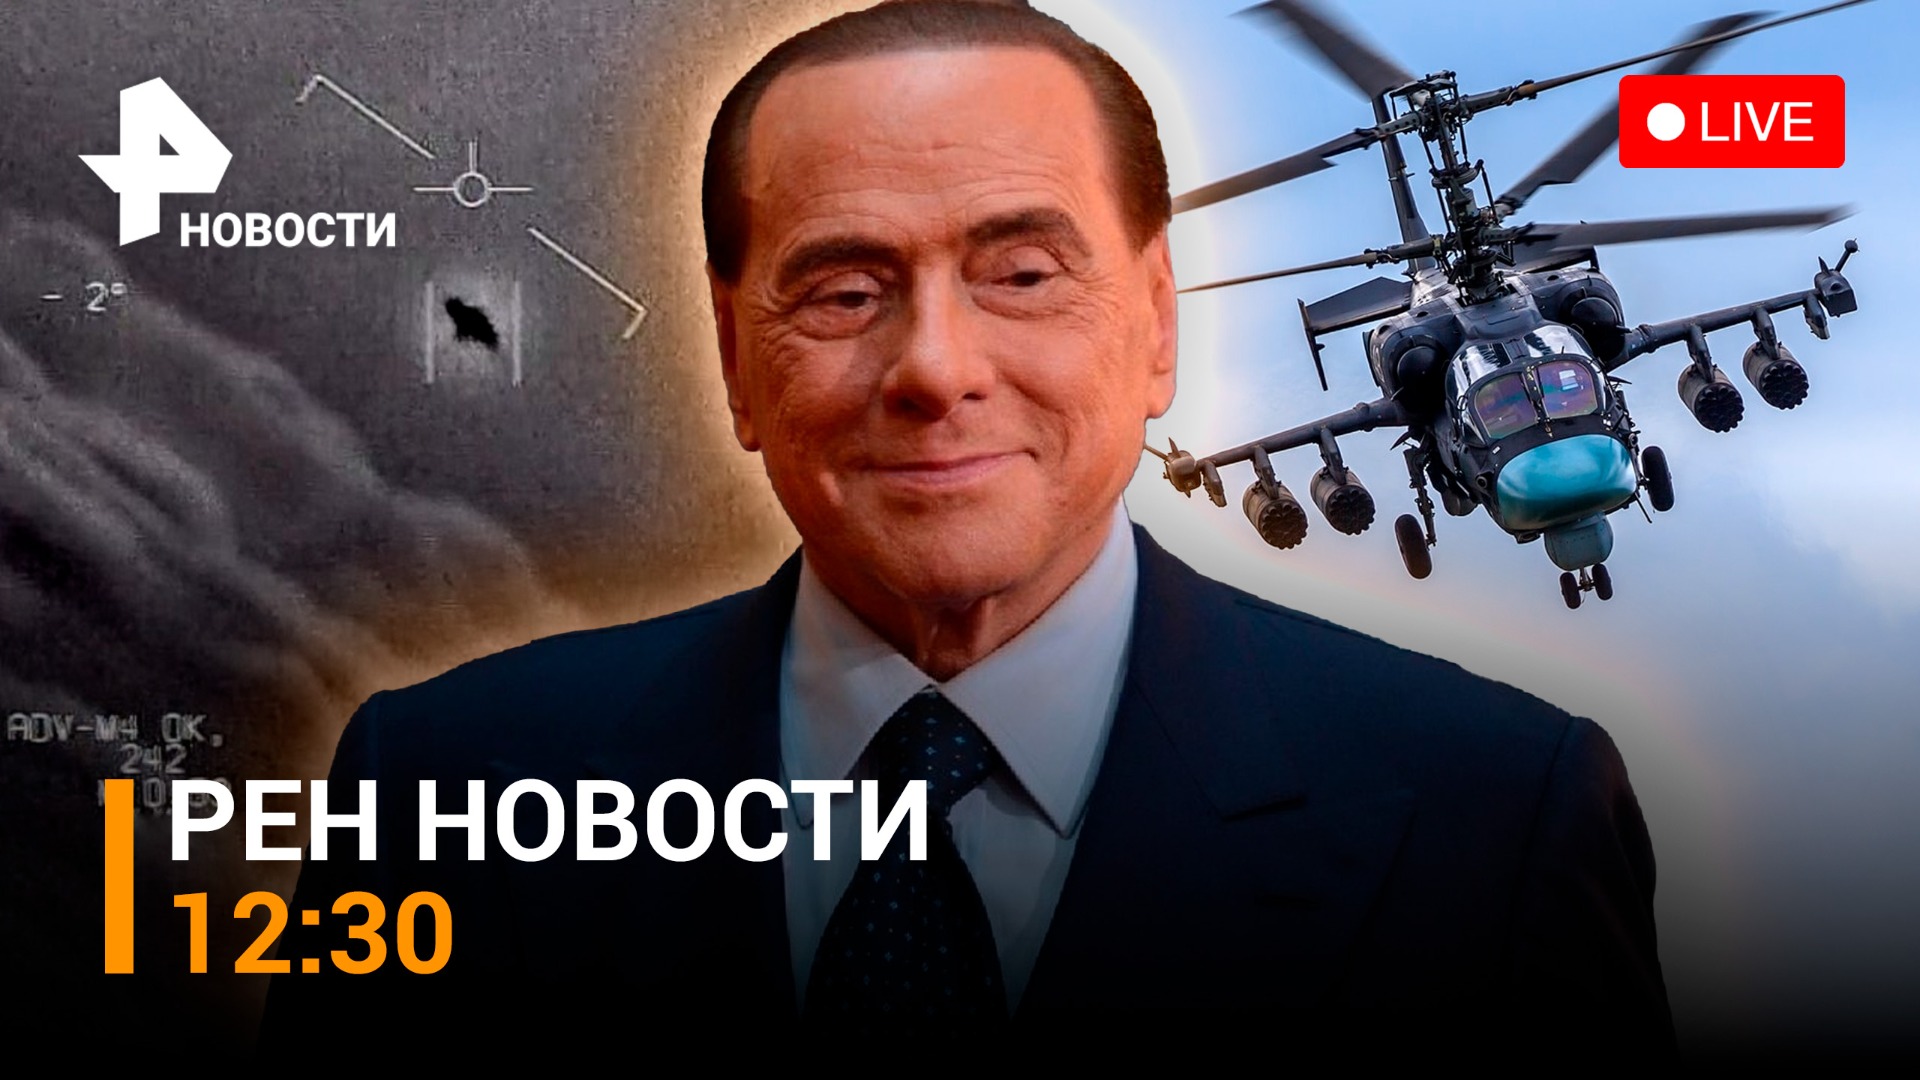 США атакуют загадочные шары. Берлускони раскритиковал Зеленского / РЕН ТВ НОВОСТИ 13.02, 12:30